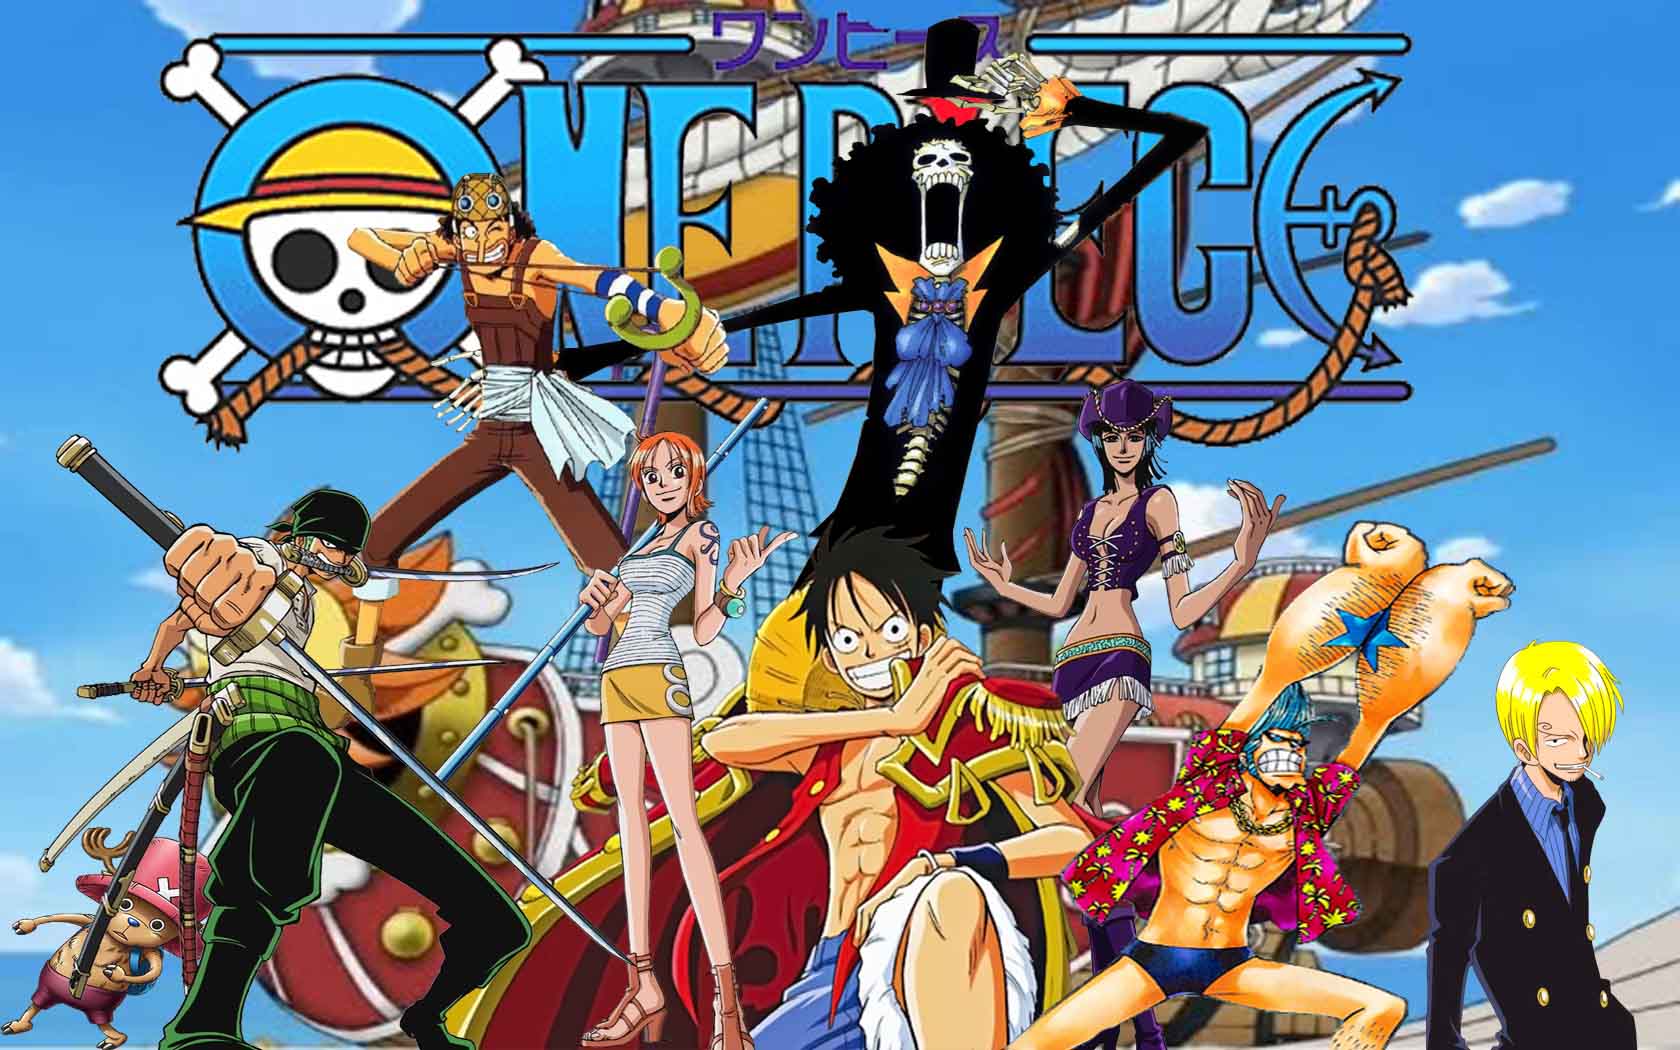 Hình One Piece rất đẹp ngầu